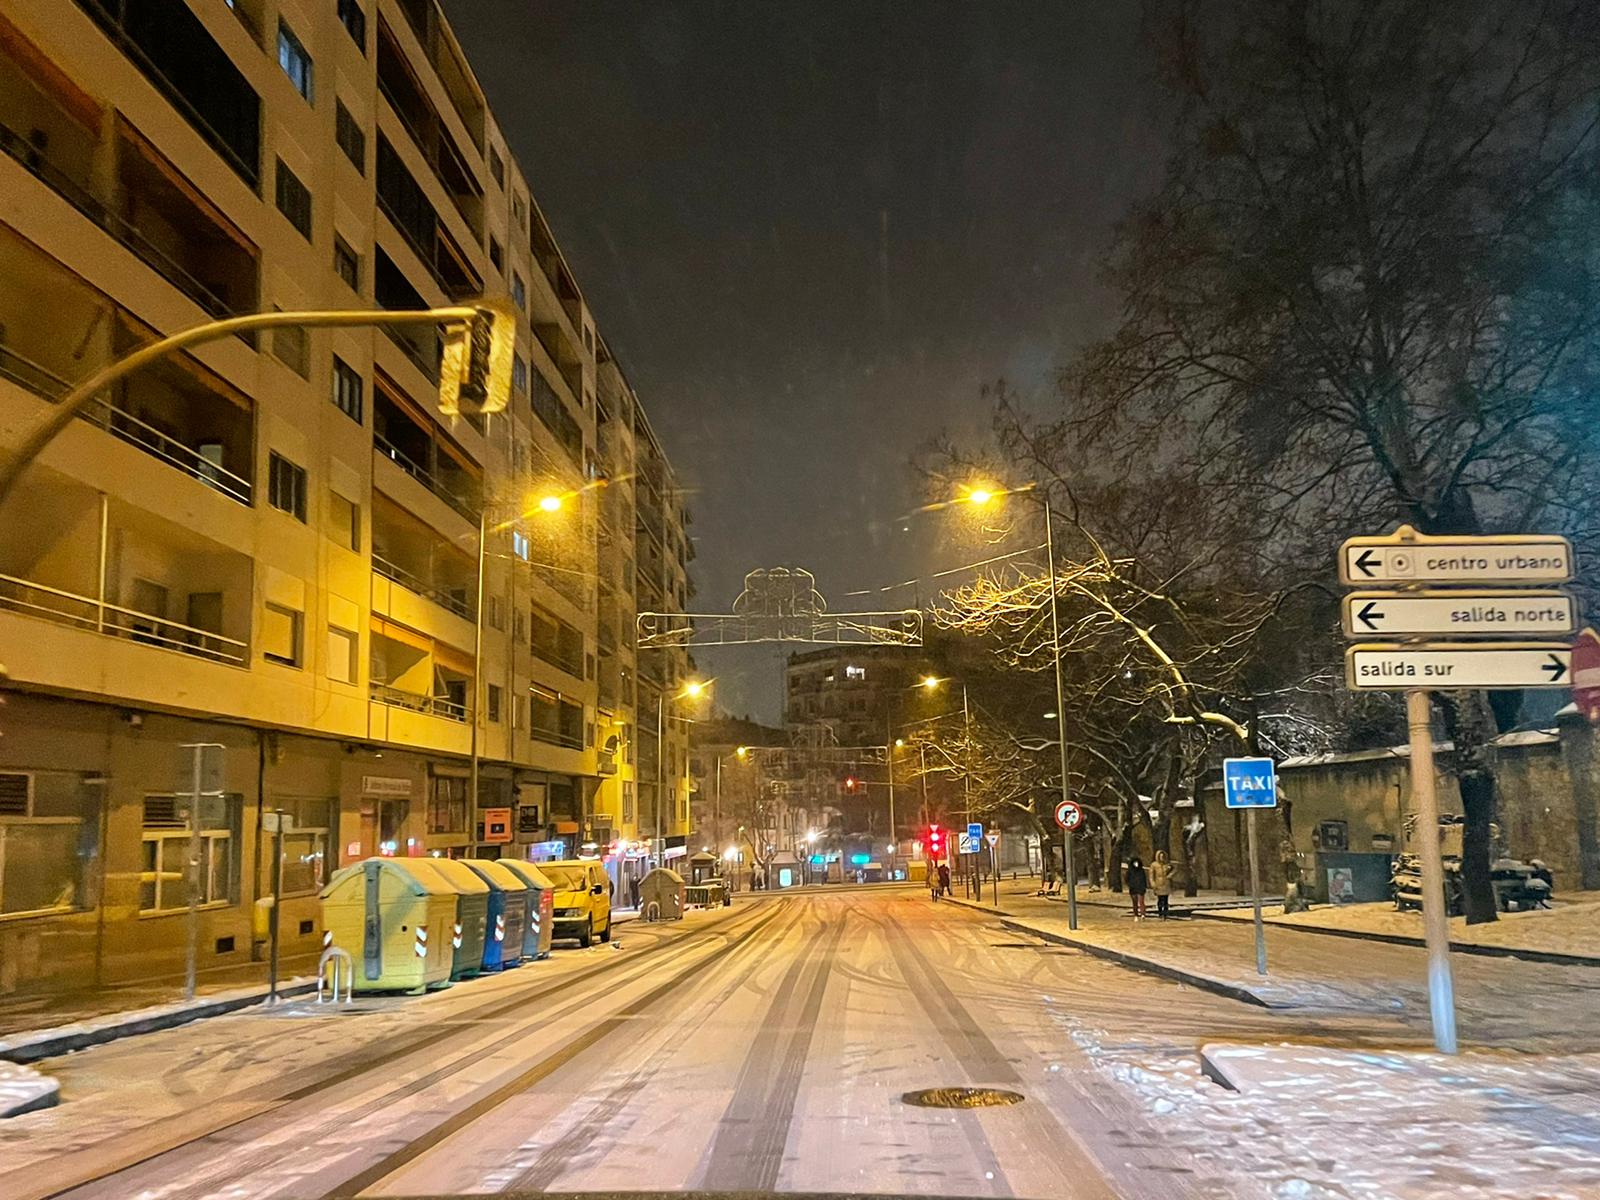 Nieve por las calles de Salamanca sábado noche (31)